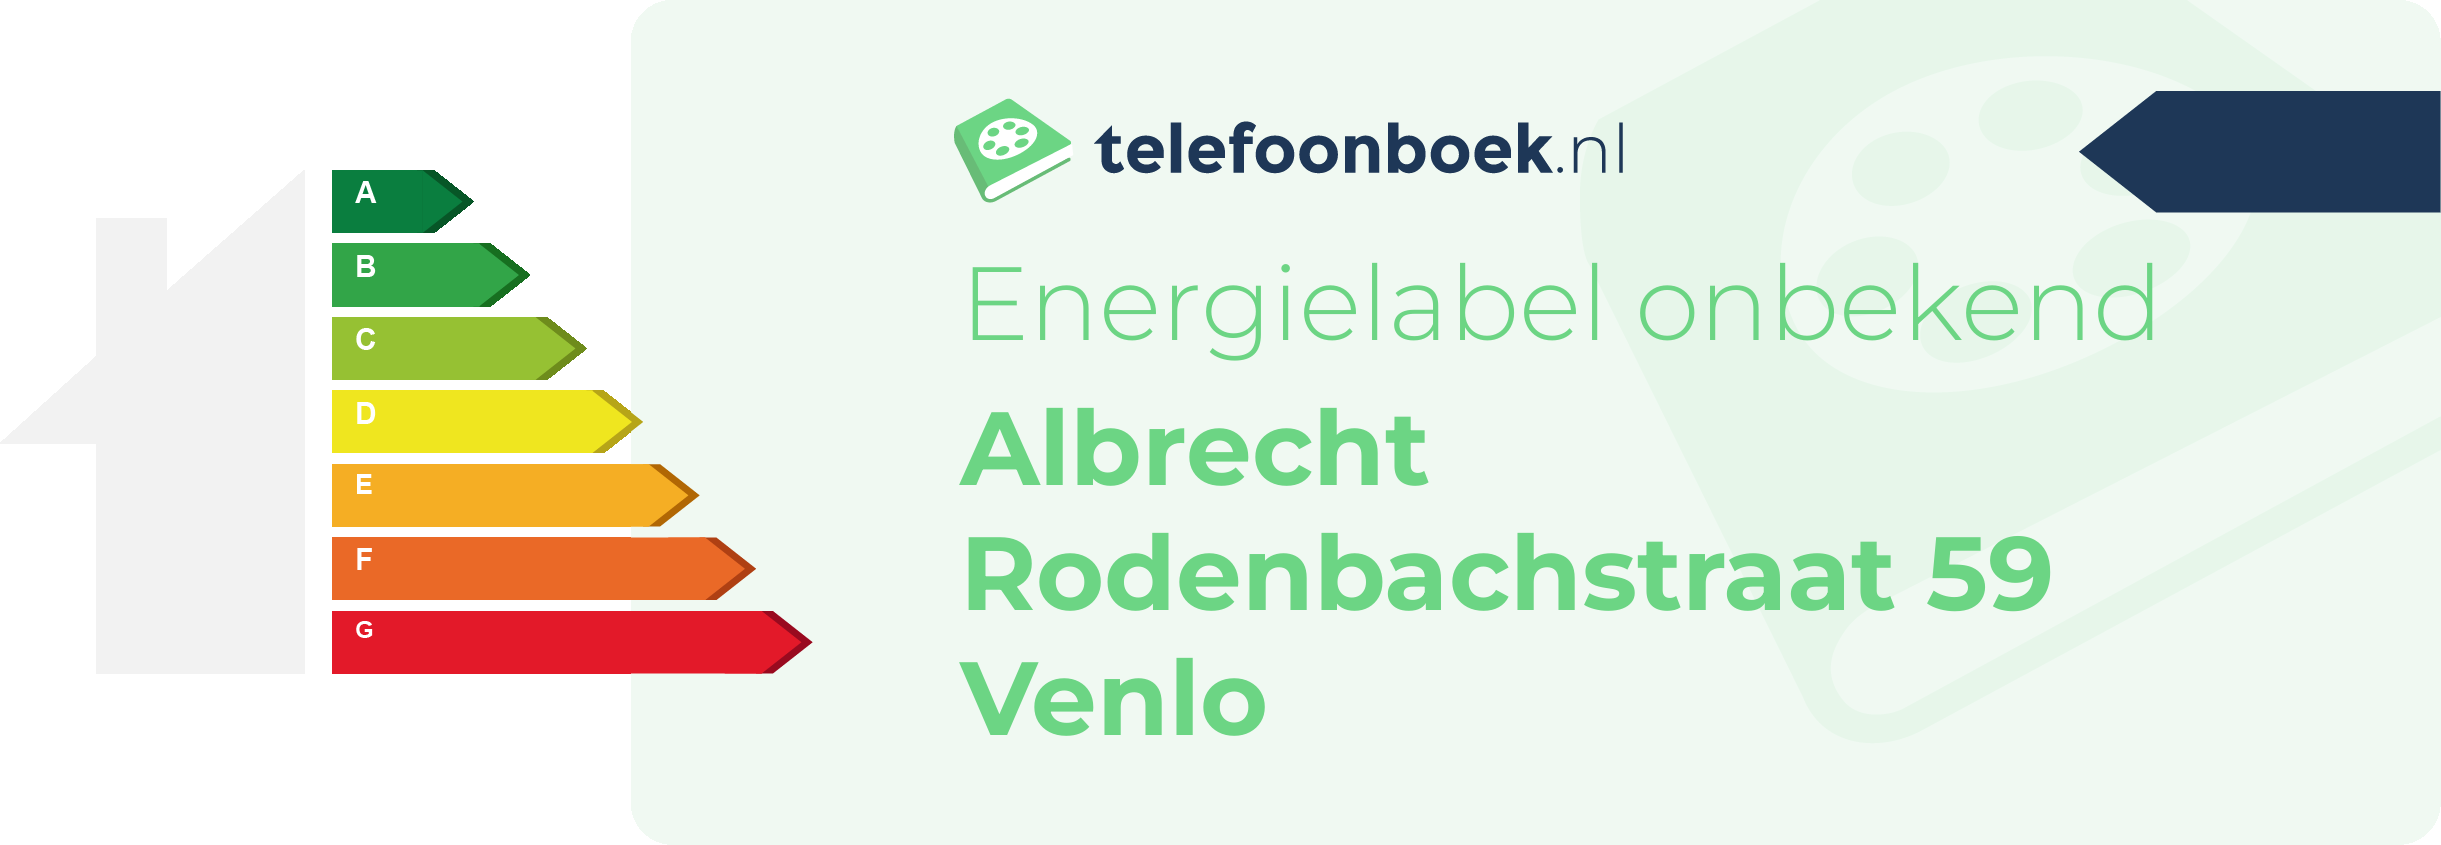 Energielabel Albrecht Rodenbachstraat 59 Venlo